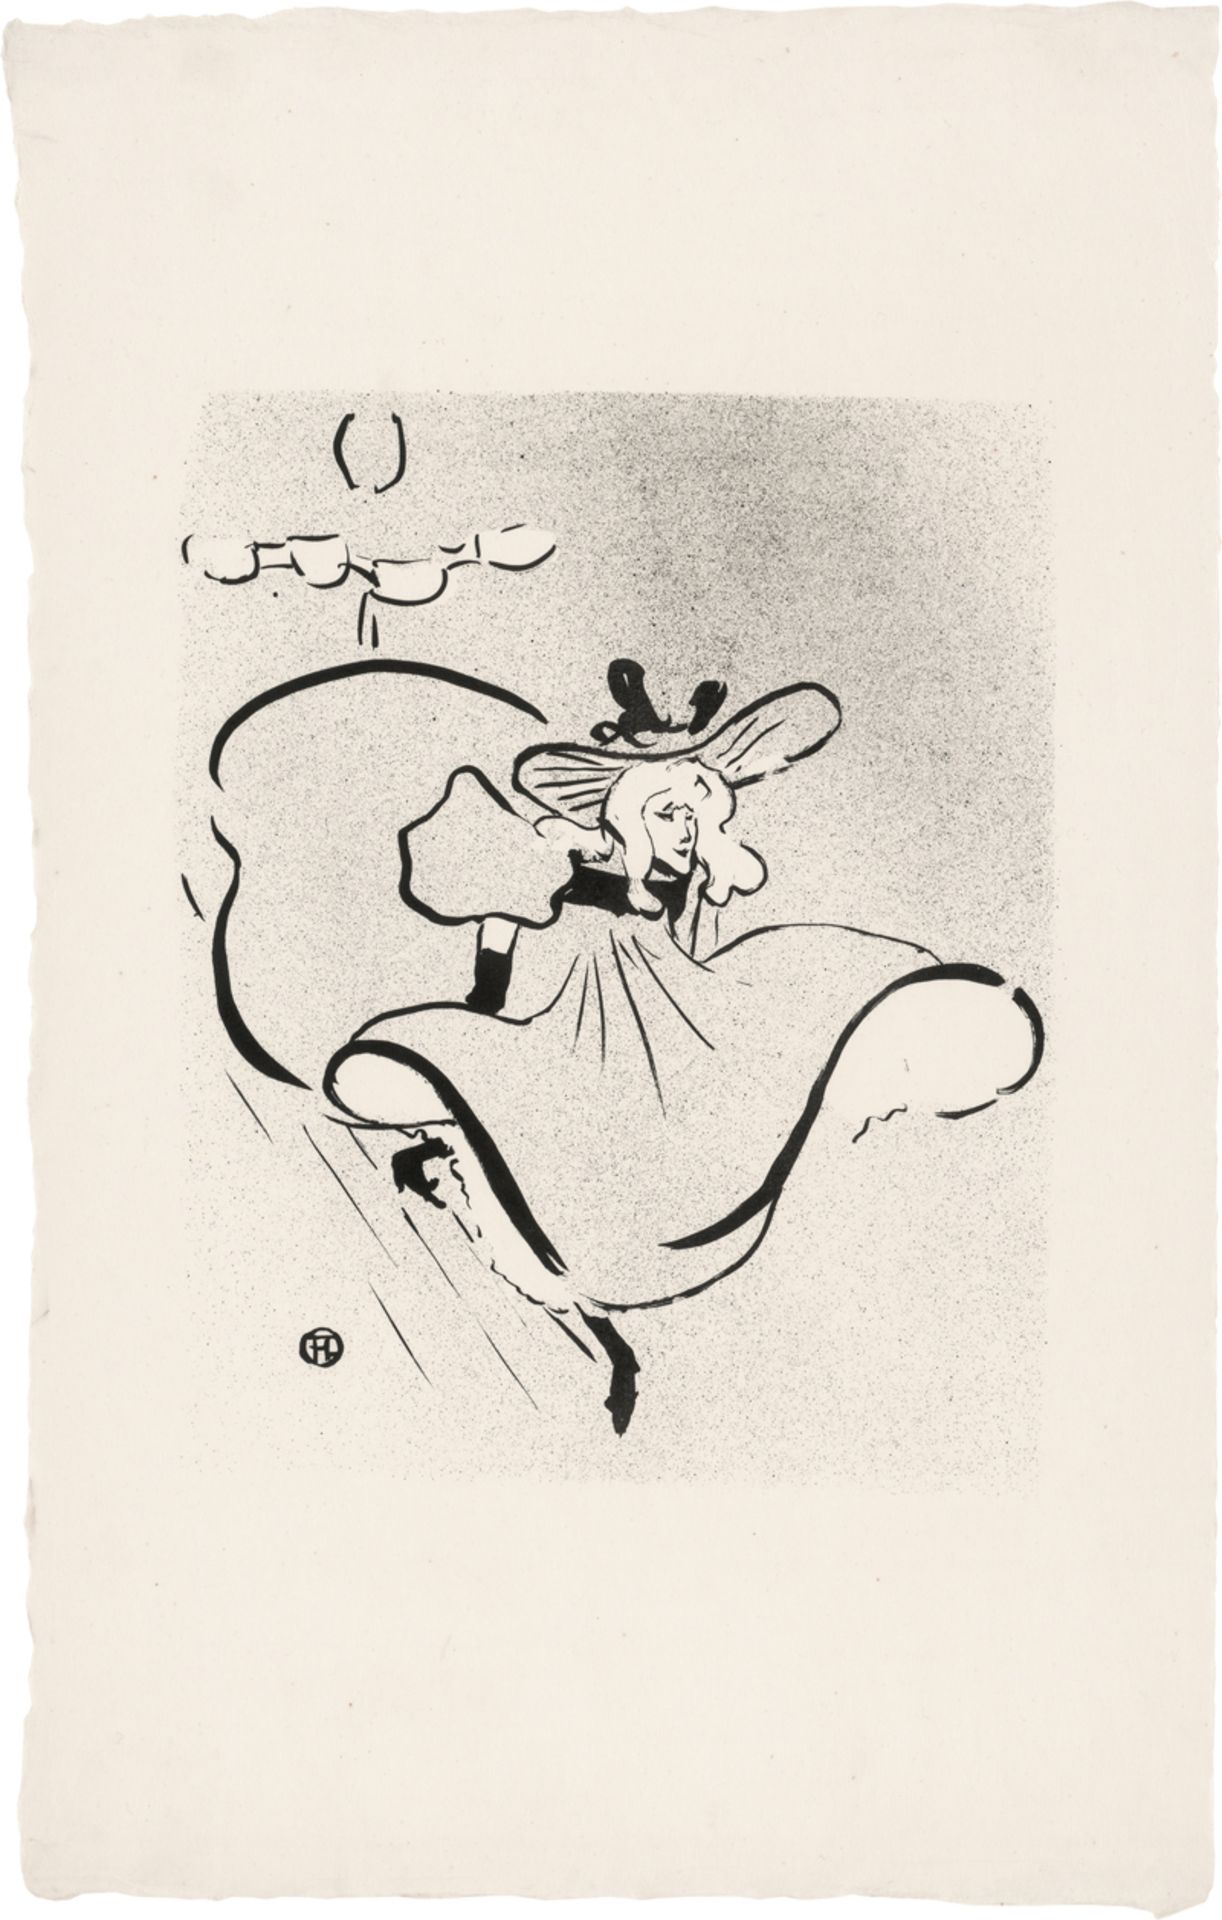 Toulouse-Lautrec, Henri de: Jane Avril - Image 2 of 2